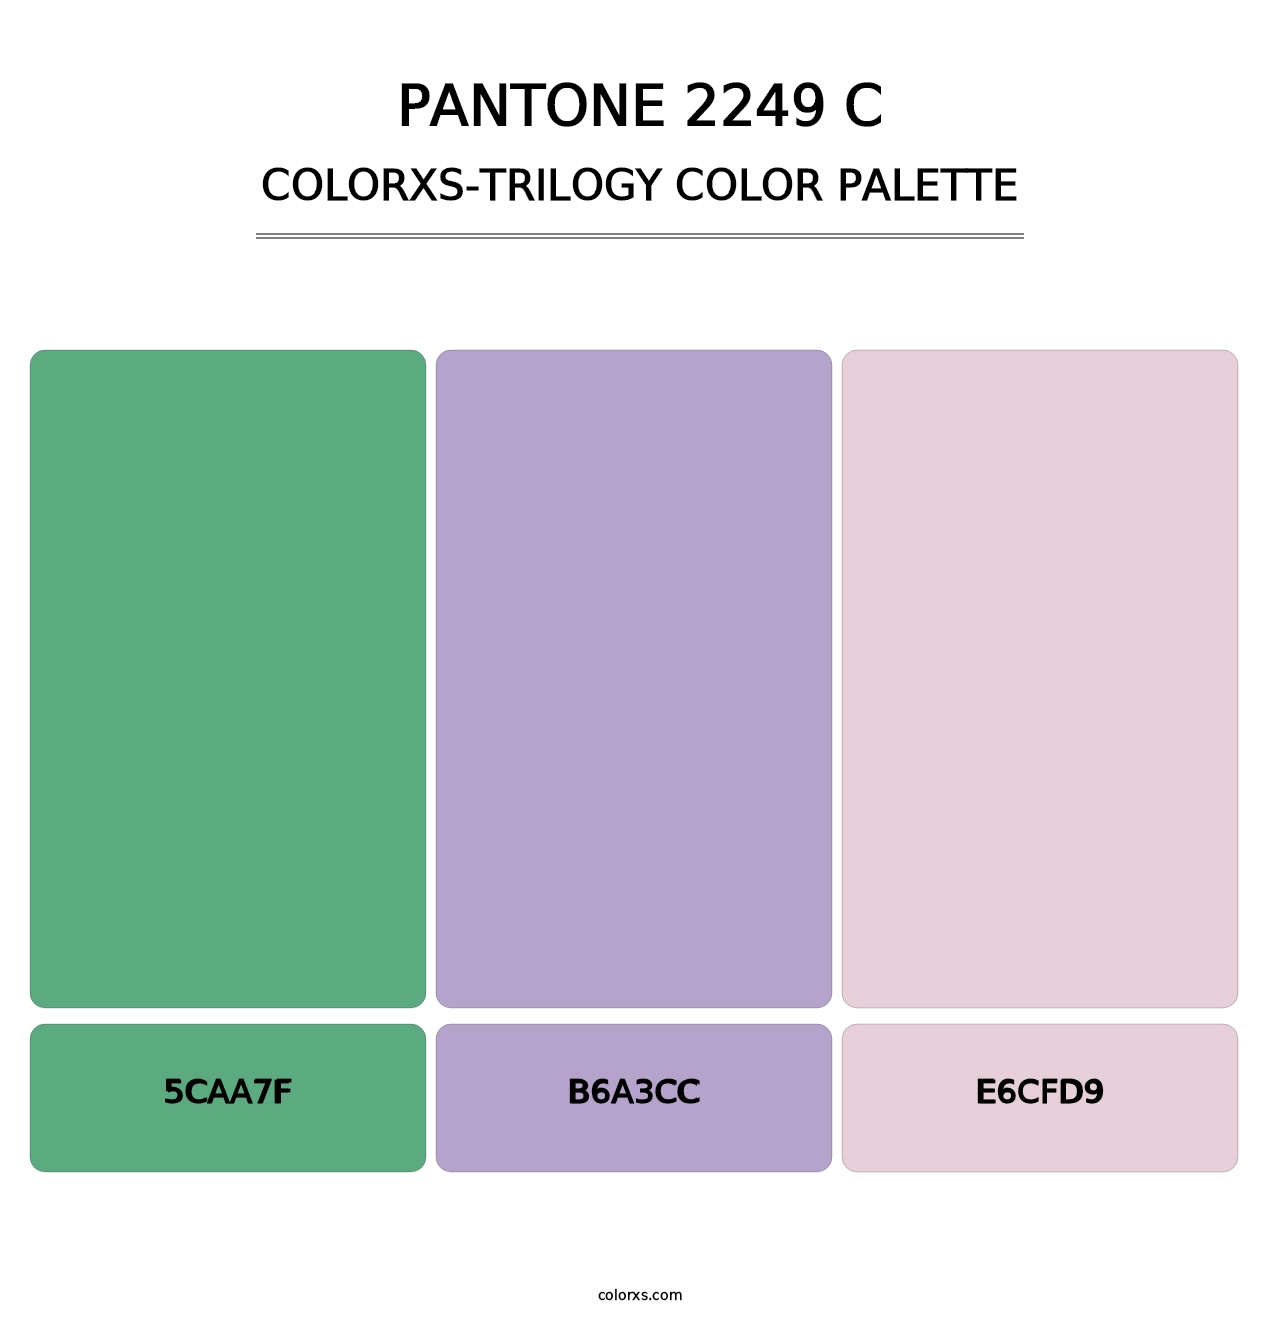 PANTONE 2249 C - Colorxs Trilogy Palette